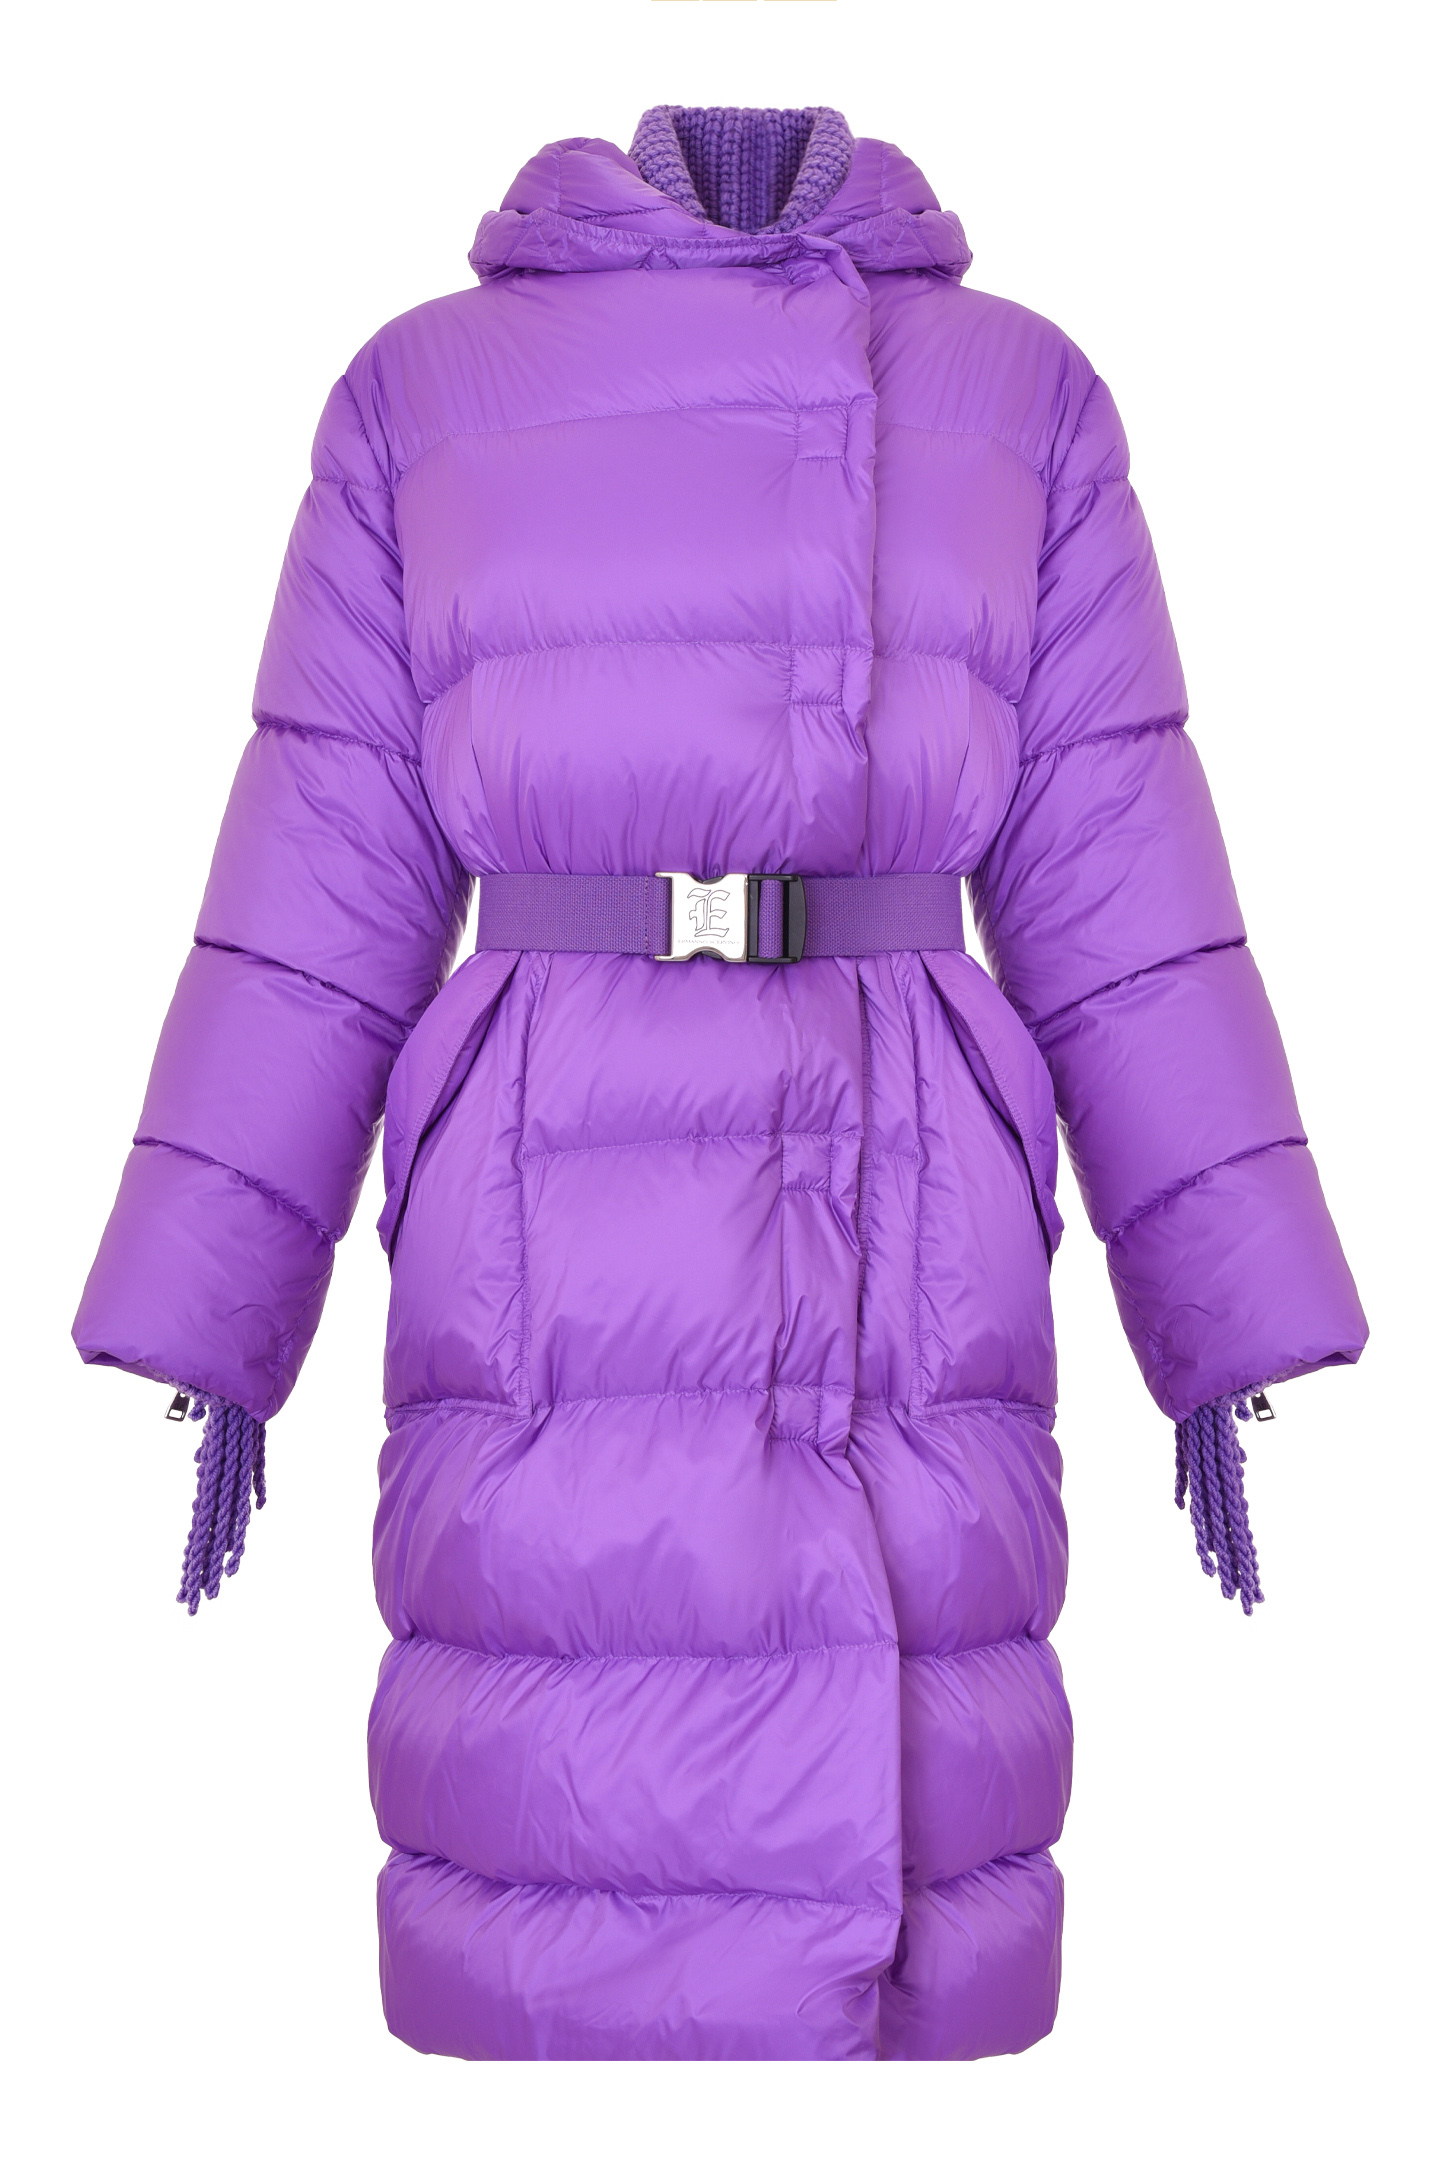 Куртка ERMANNO SCERVINO D390A738CMKAM, цвет: Фиолетовый, Женский